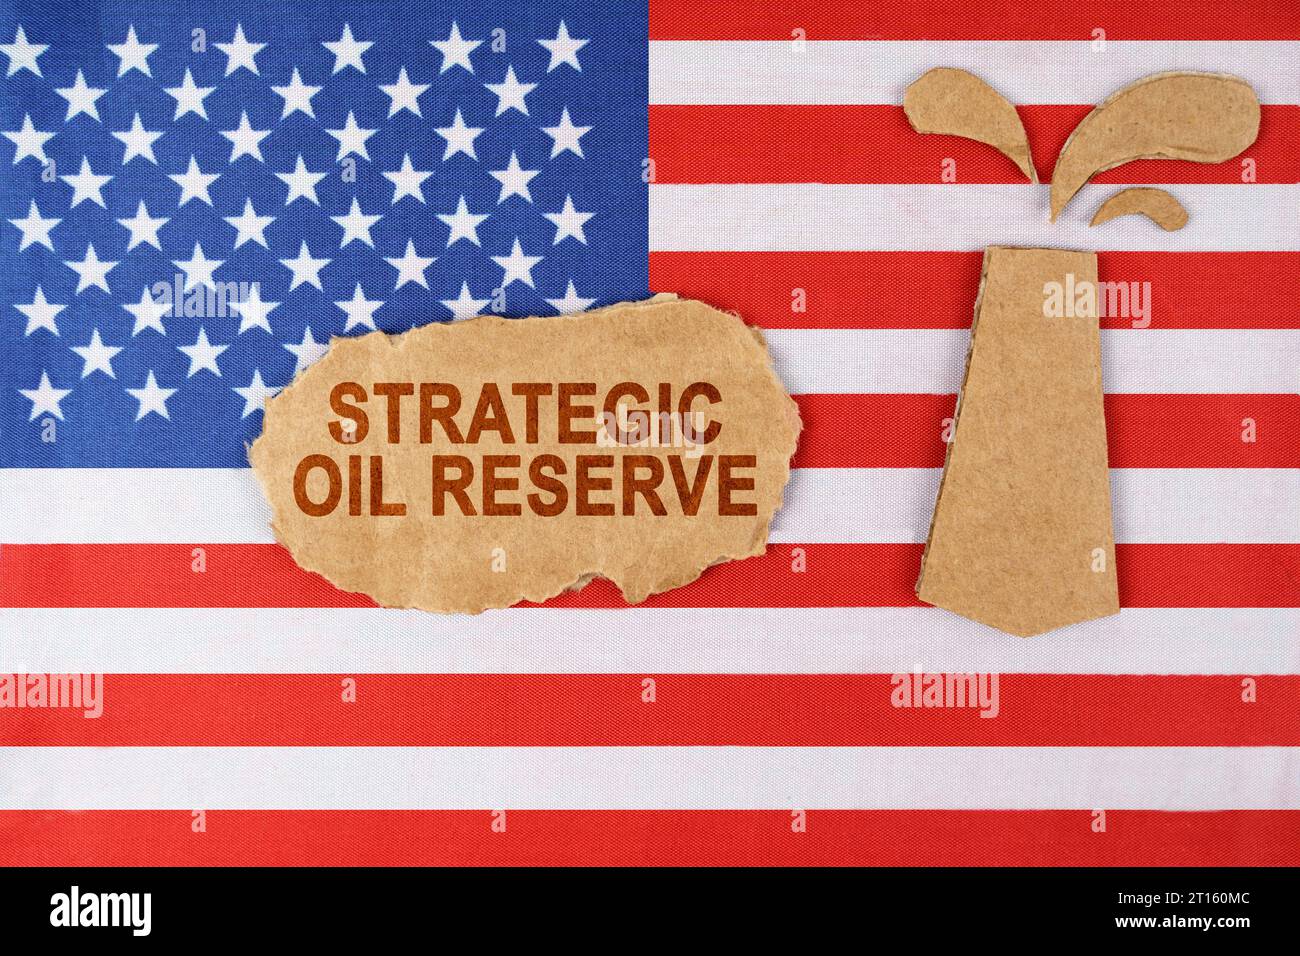 Sulla bandiera degli Stati Uniti c'è una piattaforma petrolifera tagliata in cartone e un cartello con l'iscrizione "Strategic Oil Reserve". Foto Stock